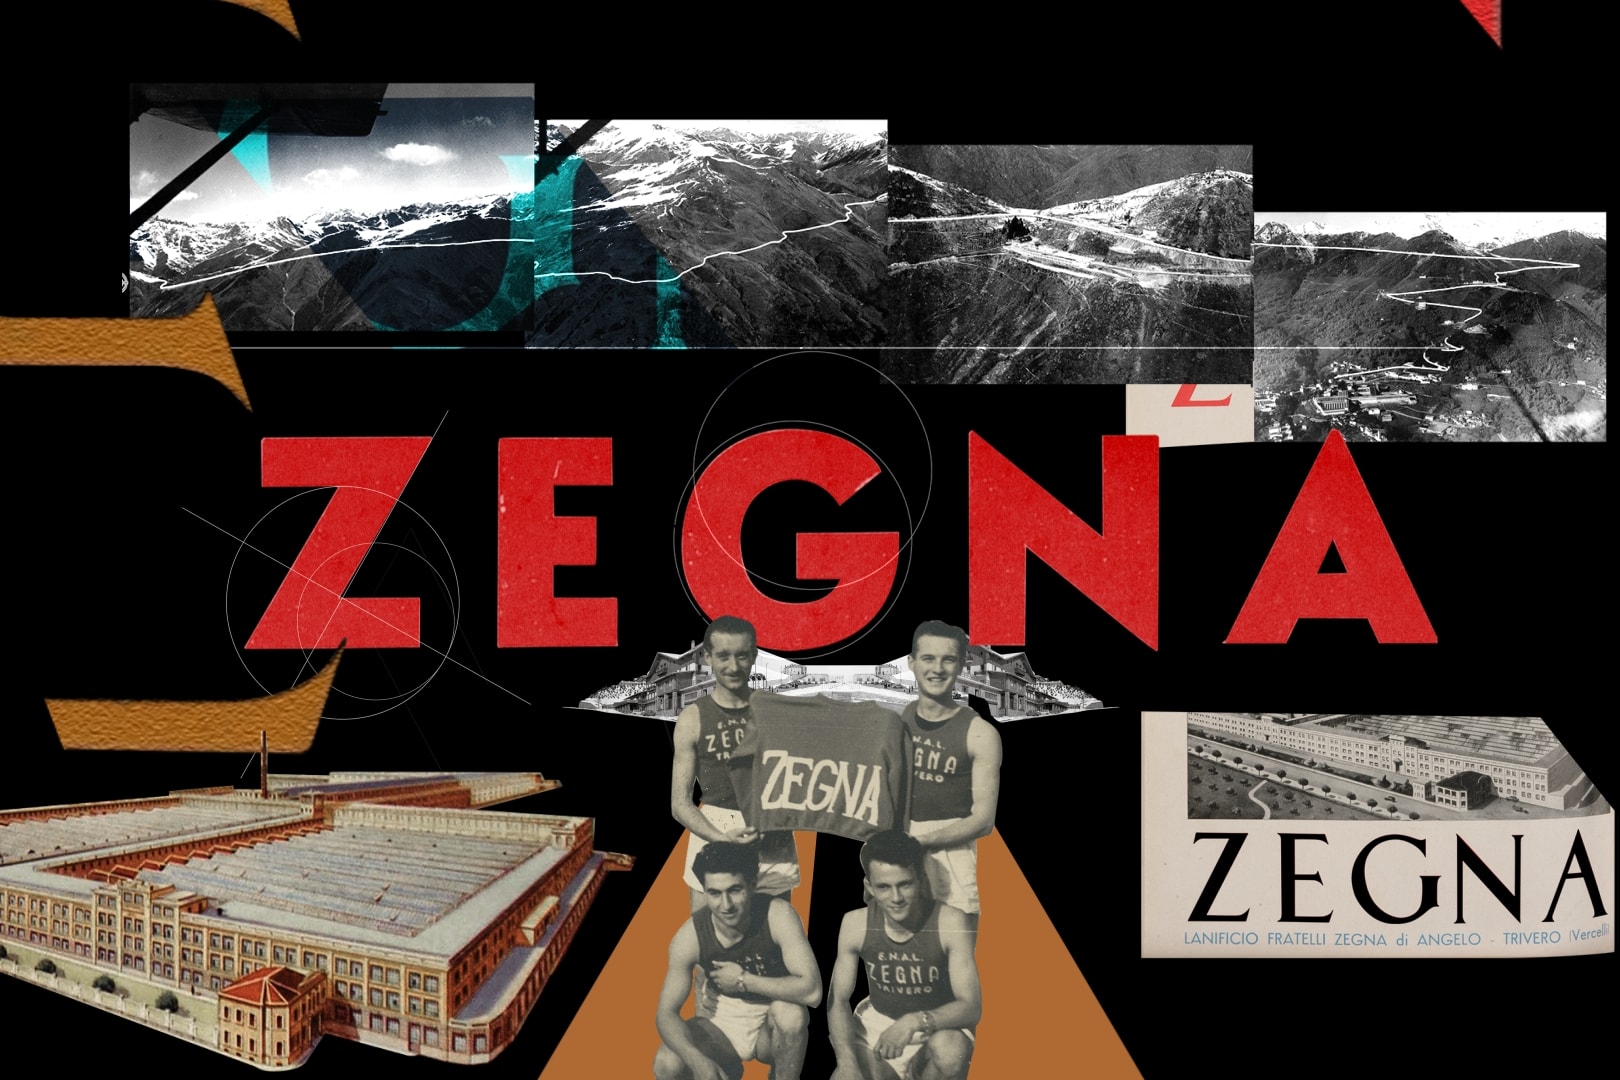 제냐, 새로운 로고와 함께 스페셜 캡슐 컬렉션 공개 ermenegildo zegna new logo capsule collection outdoor